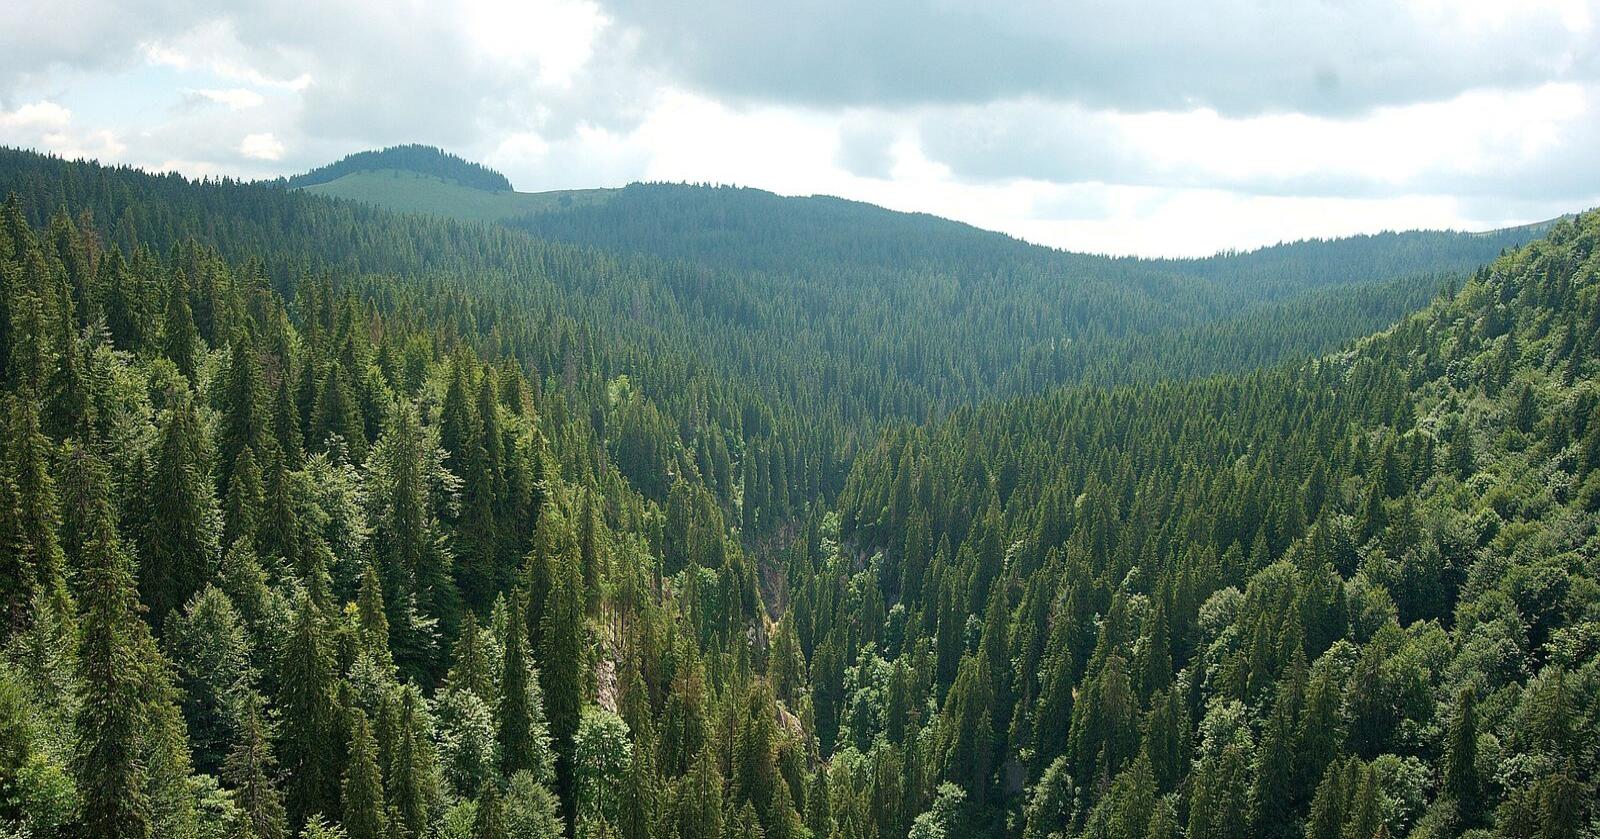 Biomasse som hentes ut for vernet skog i Sentral-Europa markedsføres som fornybar, men slipper ut mer karbon enn kull. Foto: Mostphotos 